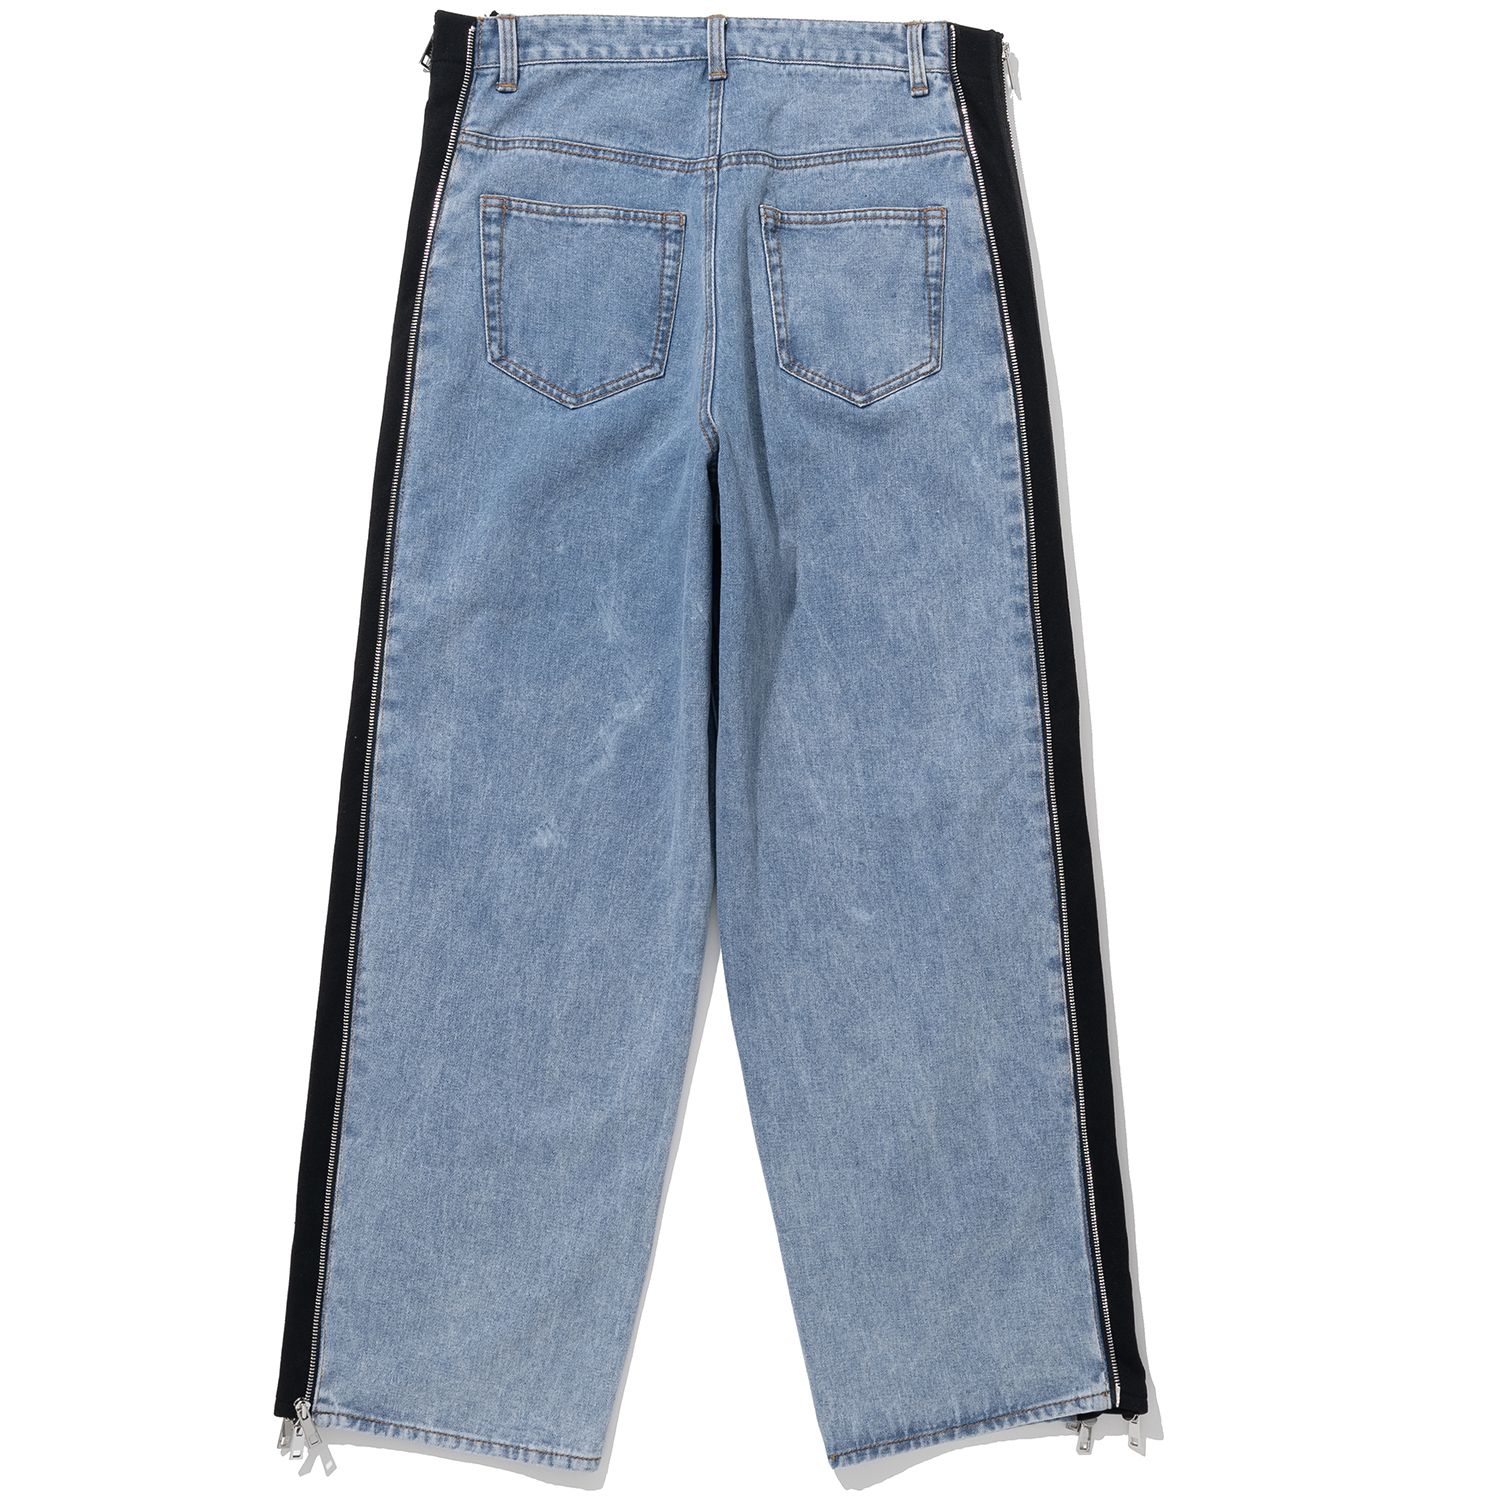 Side Zipper Incision Denim Pants - Deep Blue,NOT4NERD